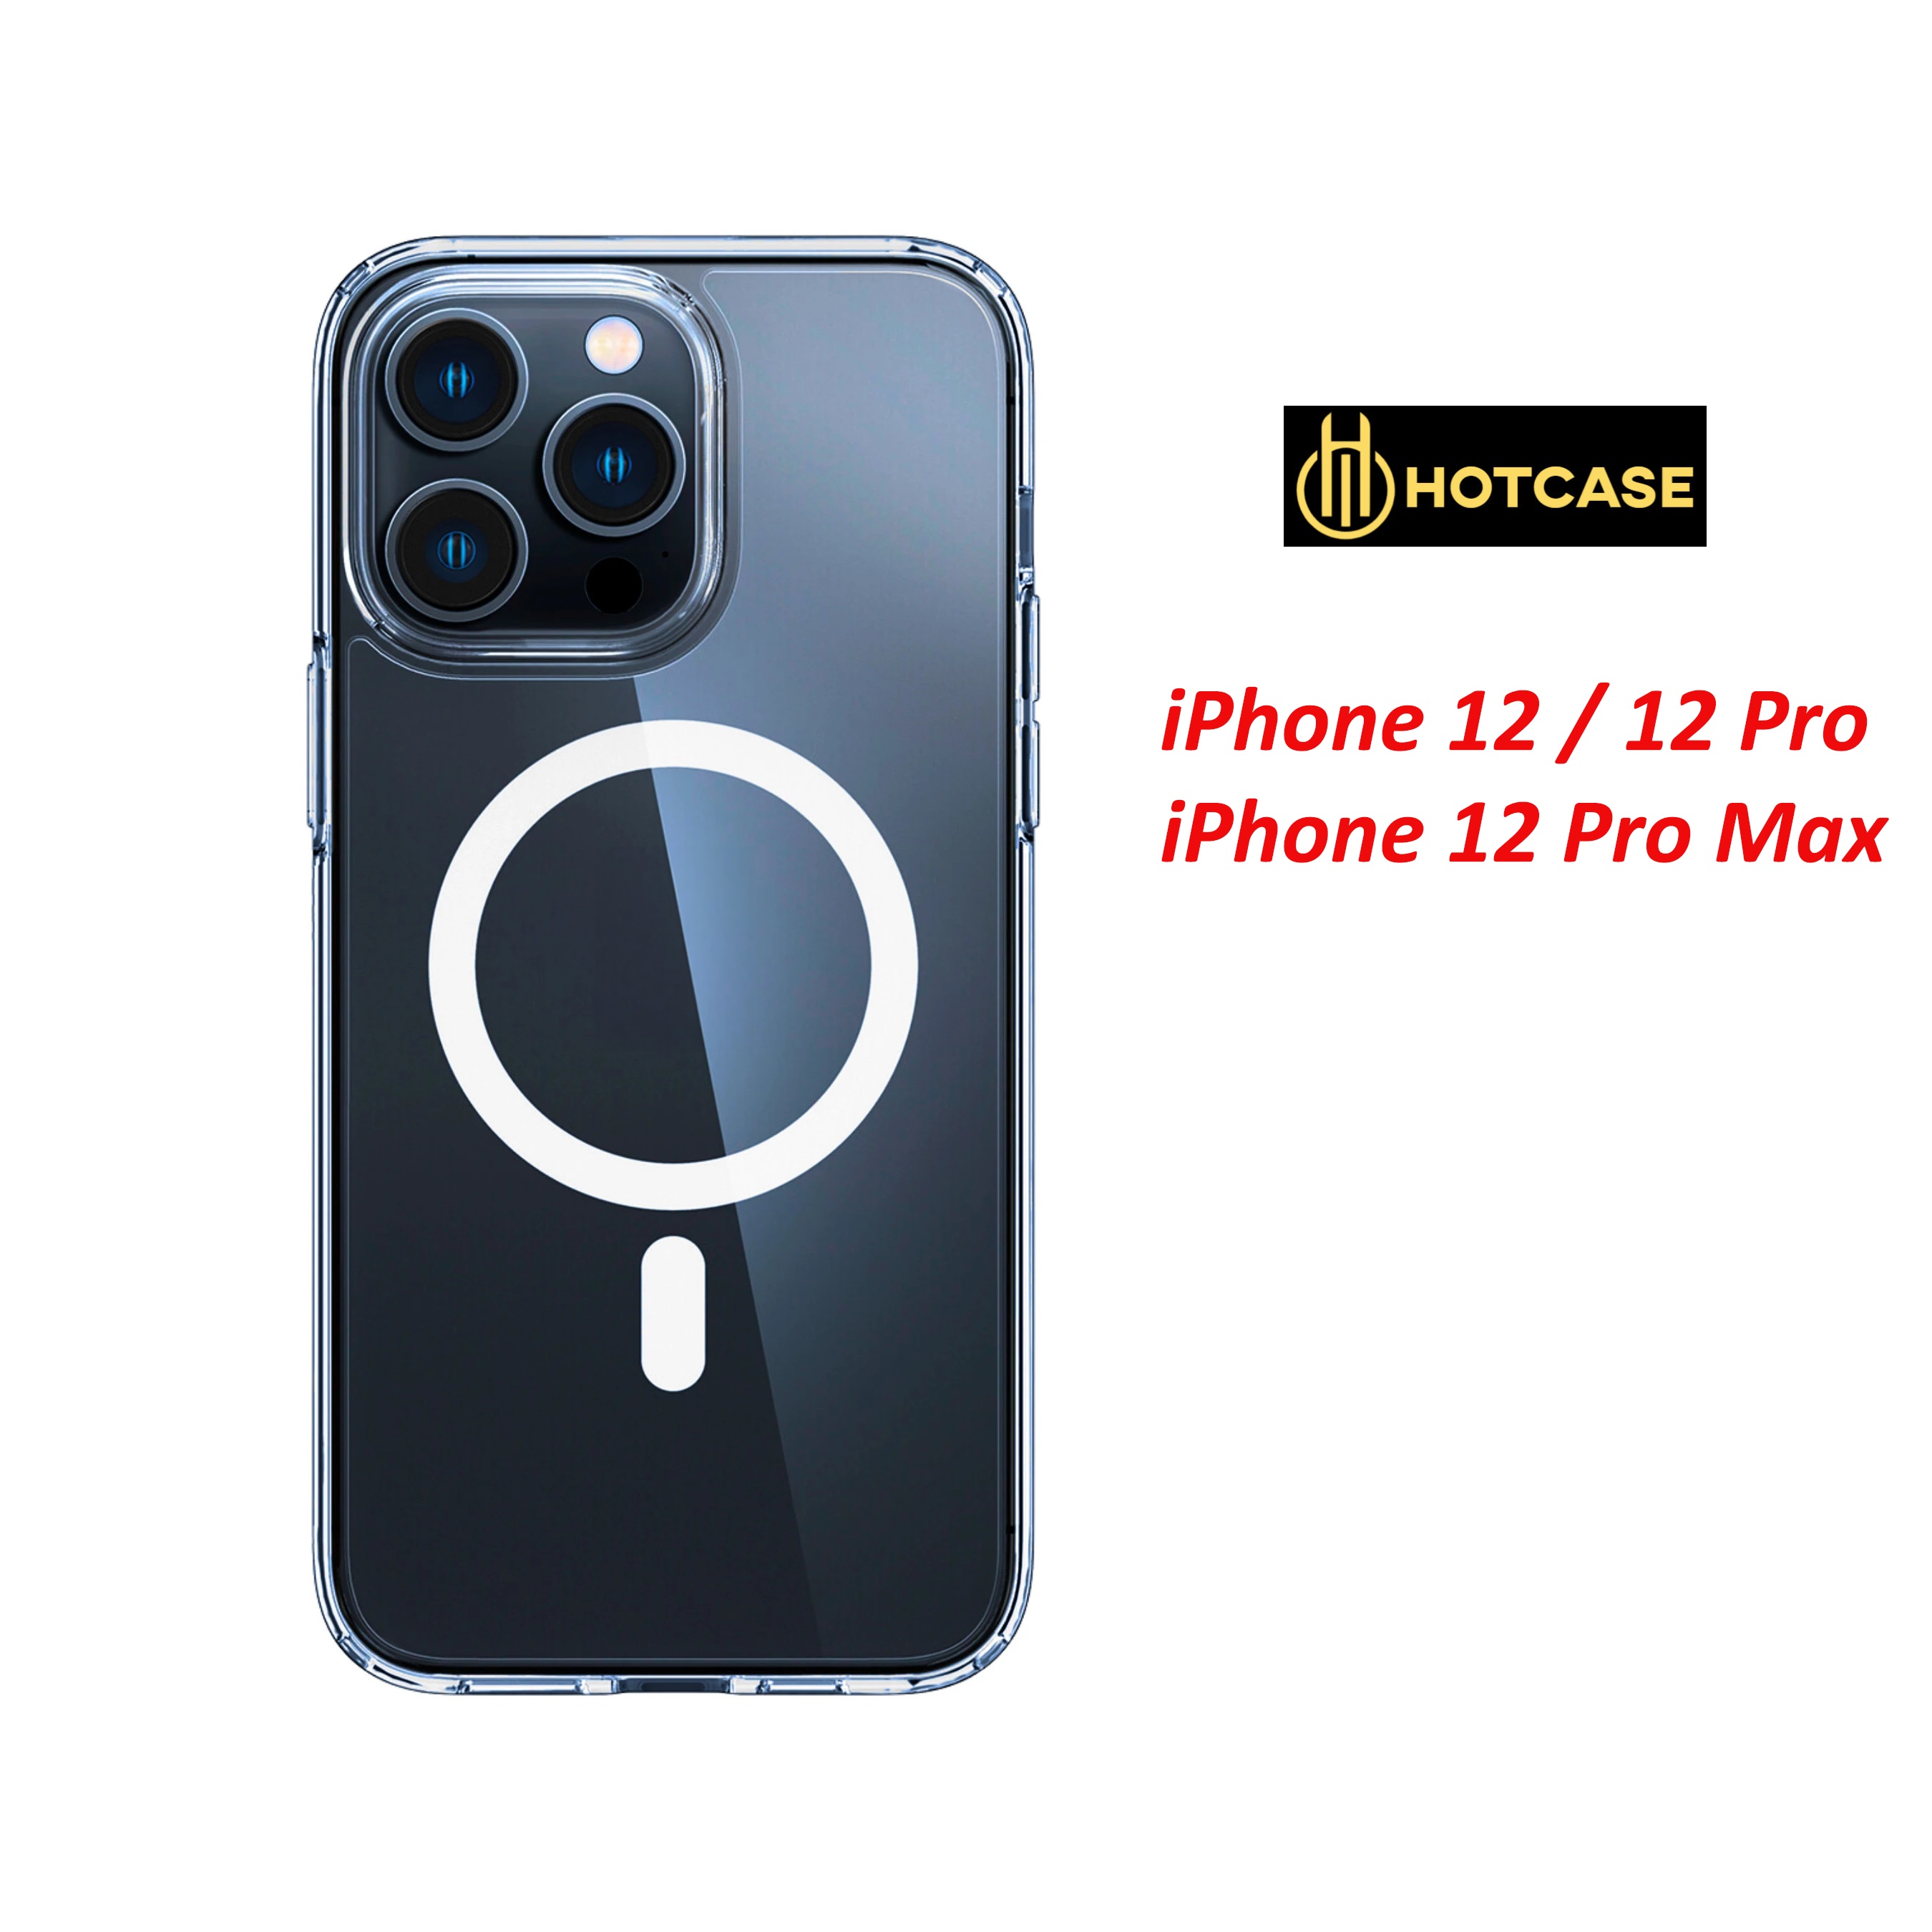 Ốp lưng chống sốc cho iPhone 12 / 12 Pro / 12 Pro Max hiệu HOTCASE sạc từ tính nam châm magnetic trong suốt - trang bị đệm khi 4 góc, Viền TPU chống sốc, lưng PC chống ố vàng - Hàng nhập khẩu